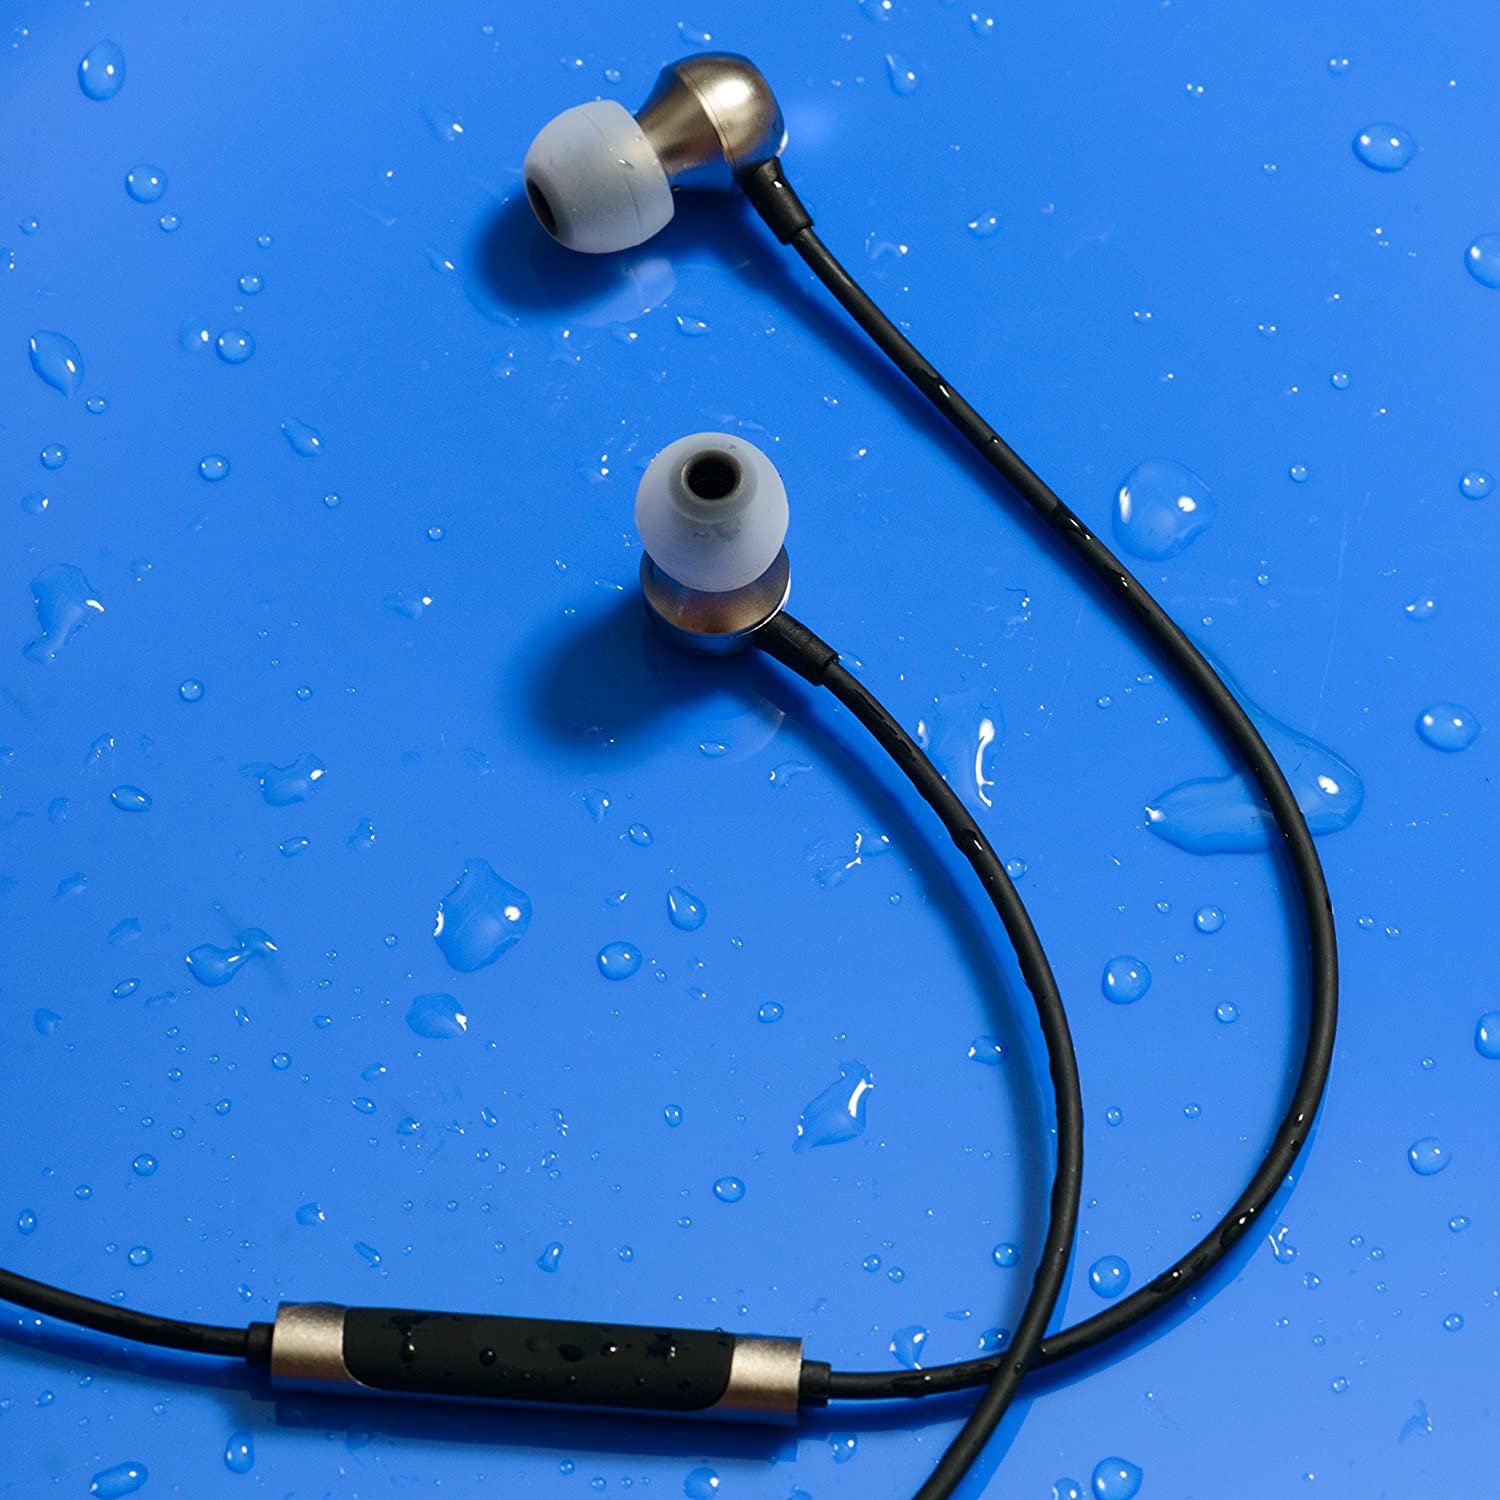 RHA MA390 Wireless in-Ear Headphone: Bluetooth Sweatproof Noise Isolating Earphones